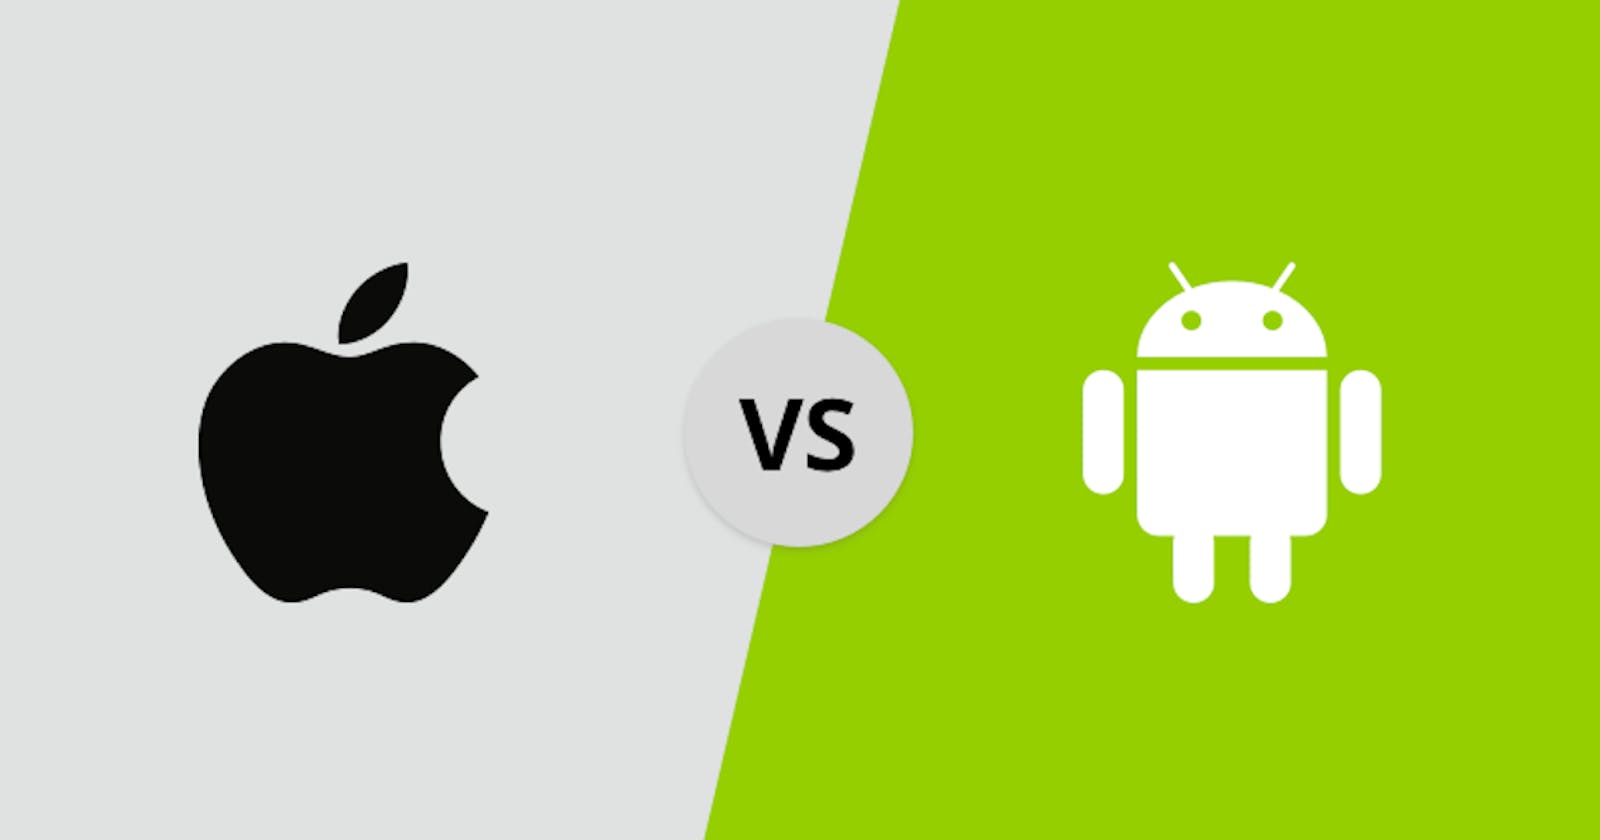 IOS (Apple) chimisiz yoki Android chi?